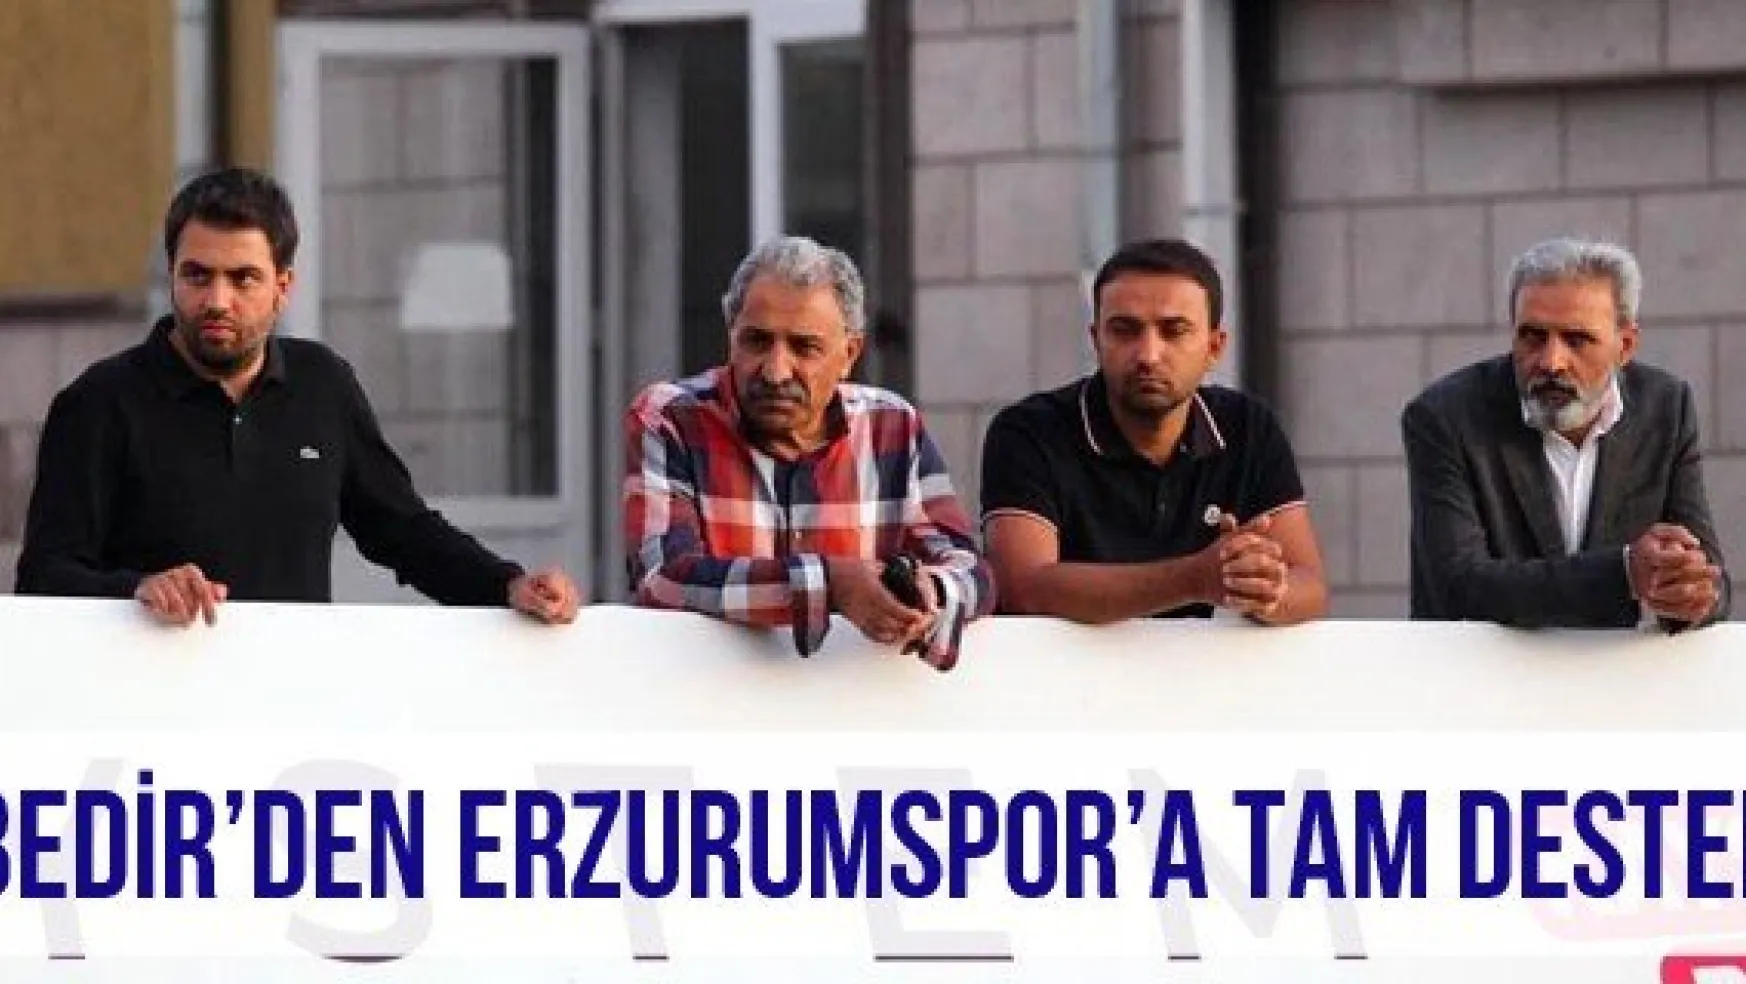 Bedir'den Erzurumspor'a tam destek